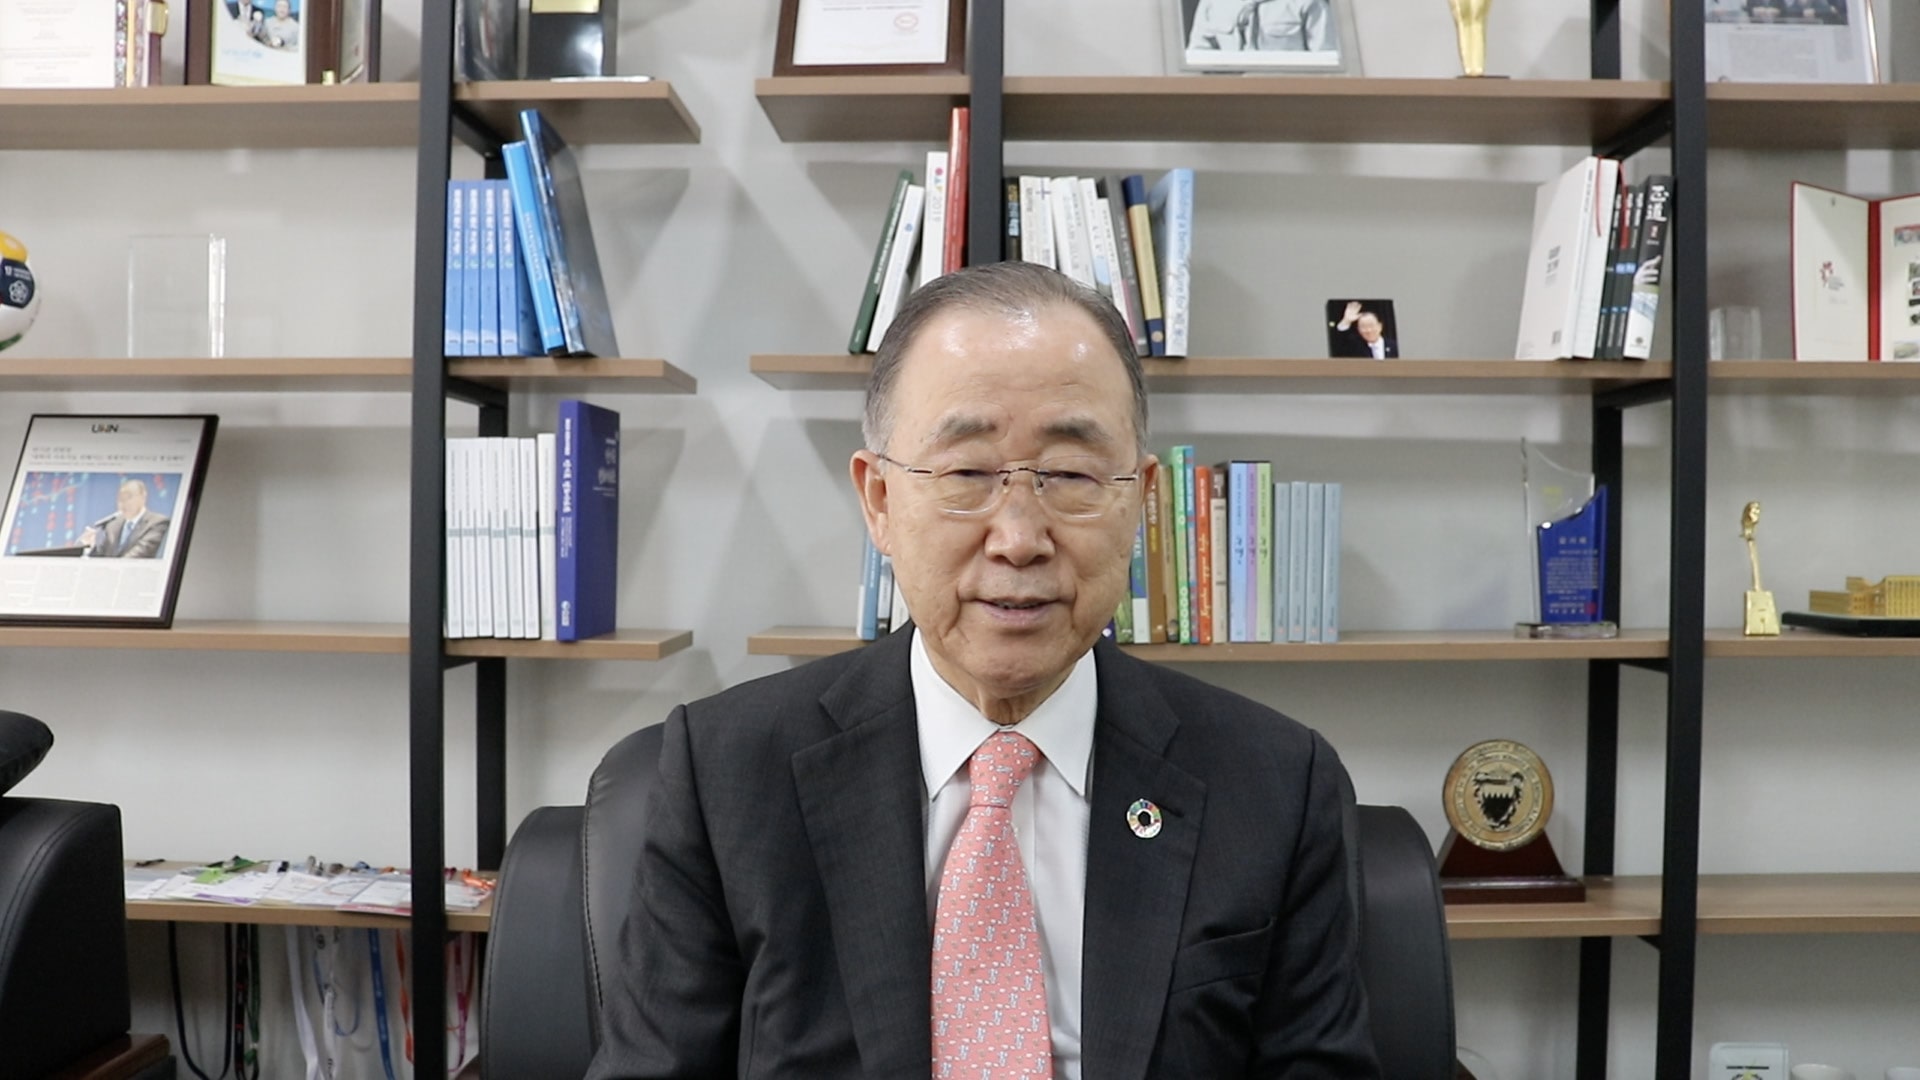 Ban Ki Moon richtet das Wort an die Absolventinnen und Absolventen des MCI. ©MCI